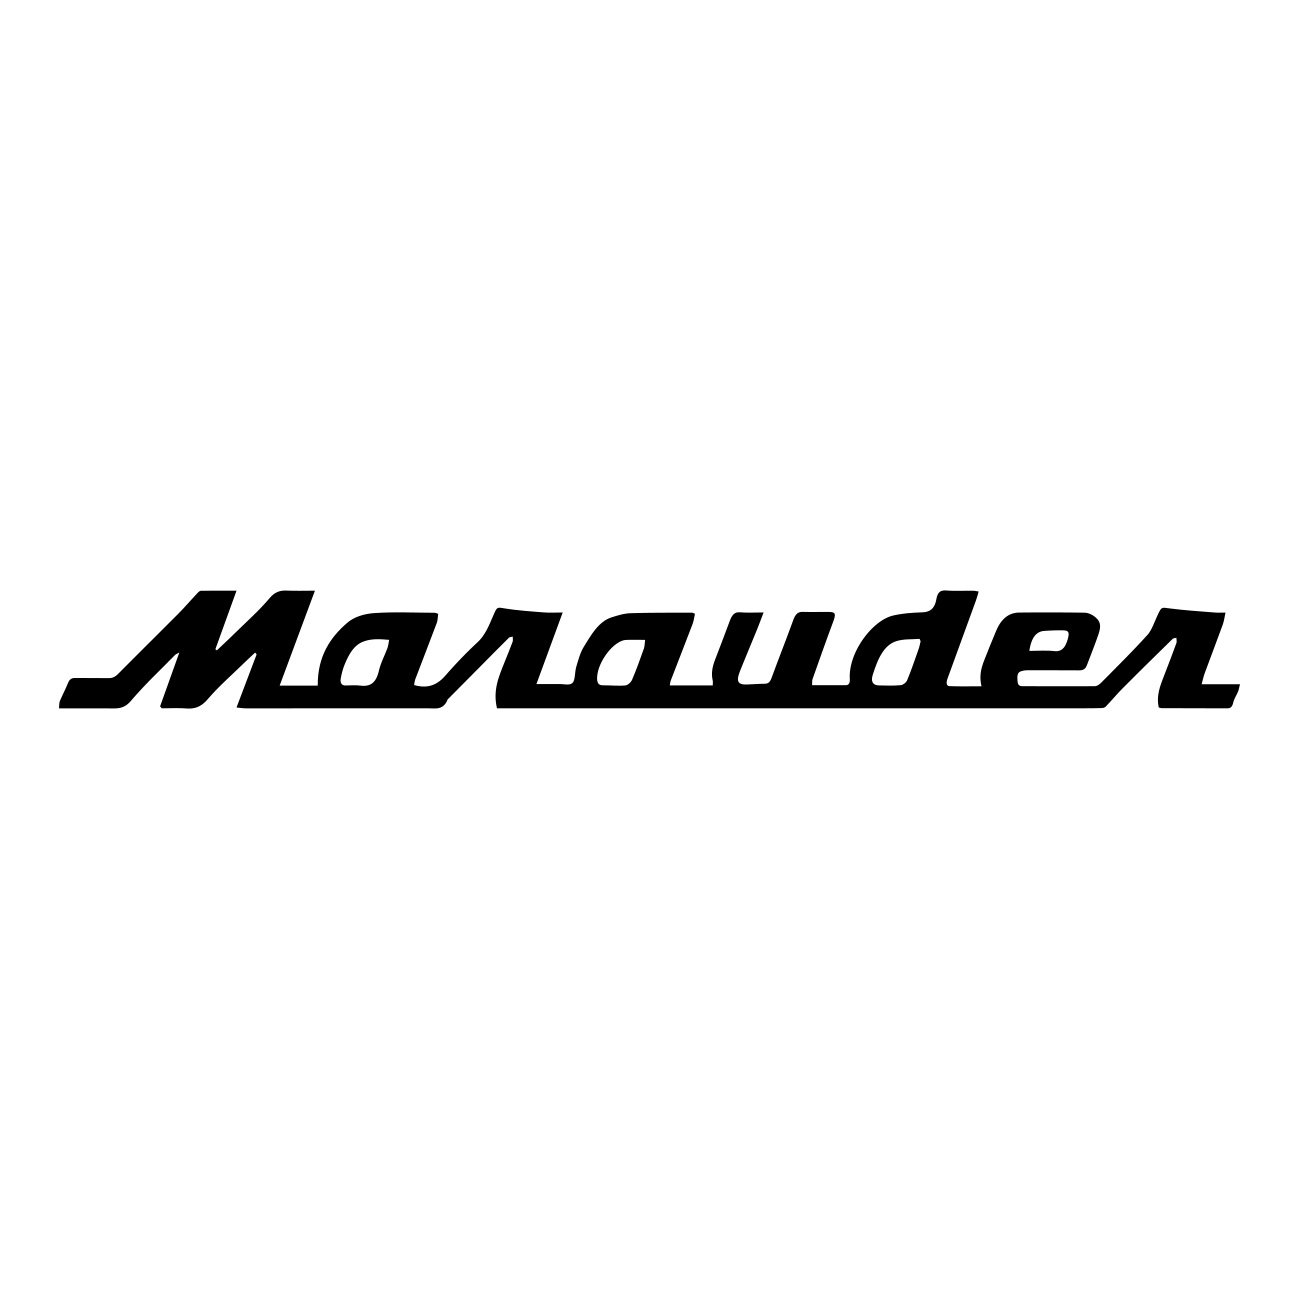 suzuki marauder logo